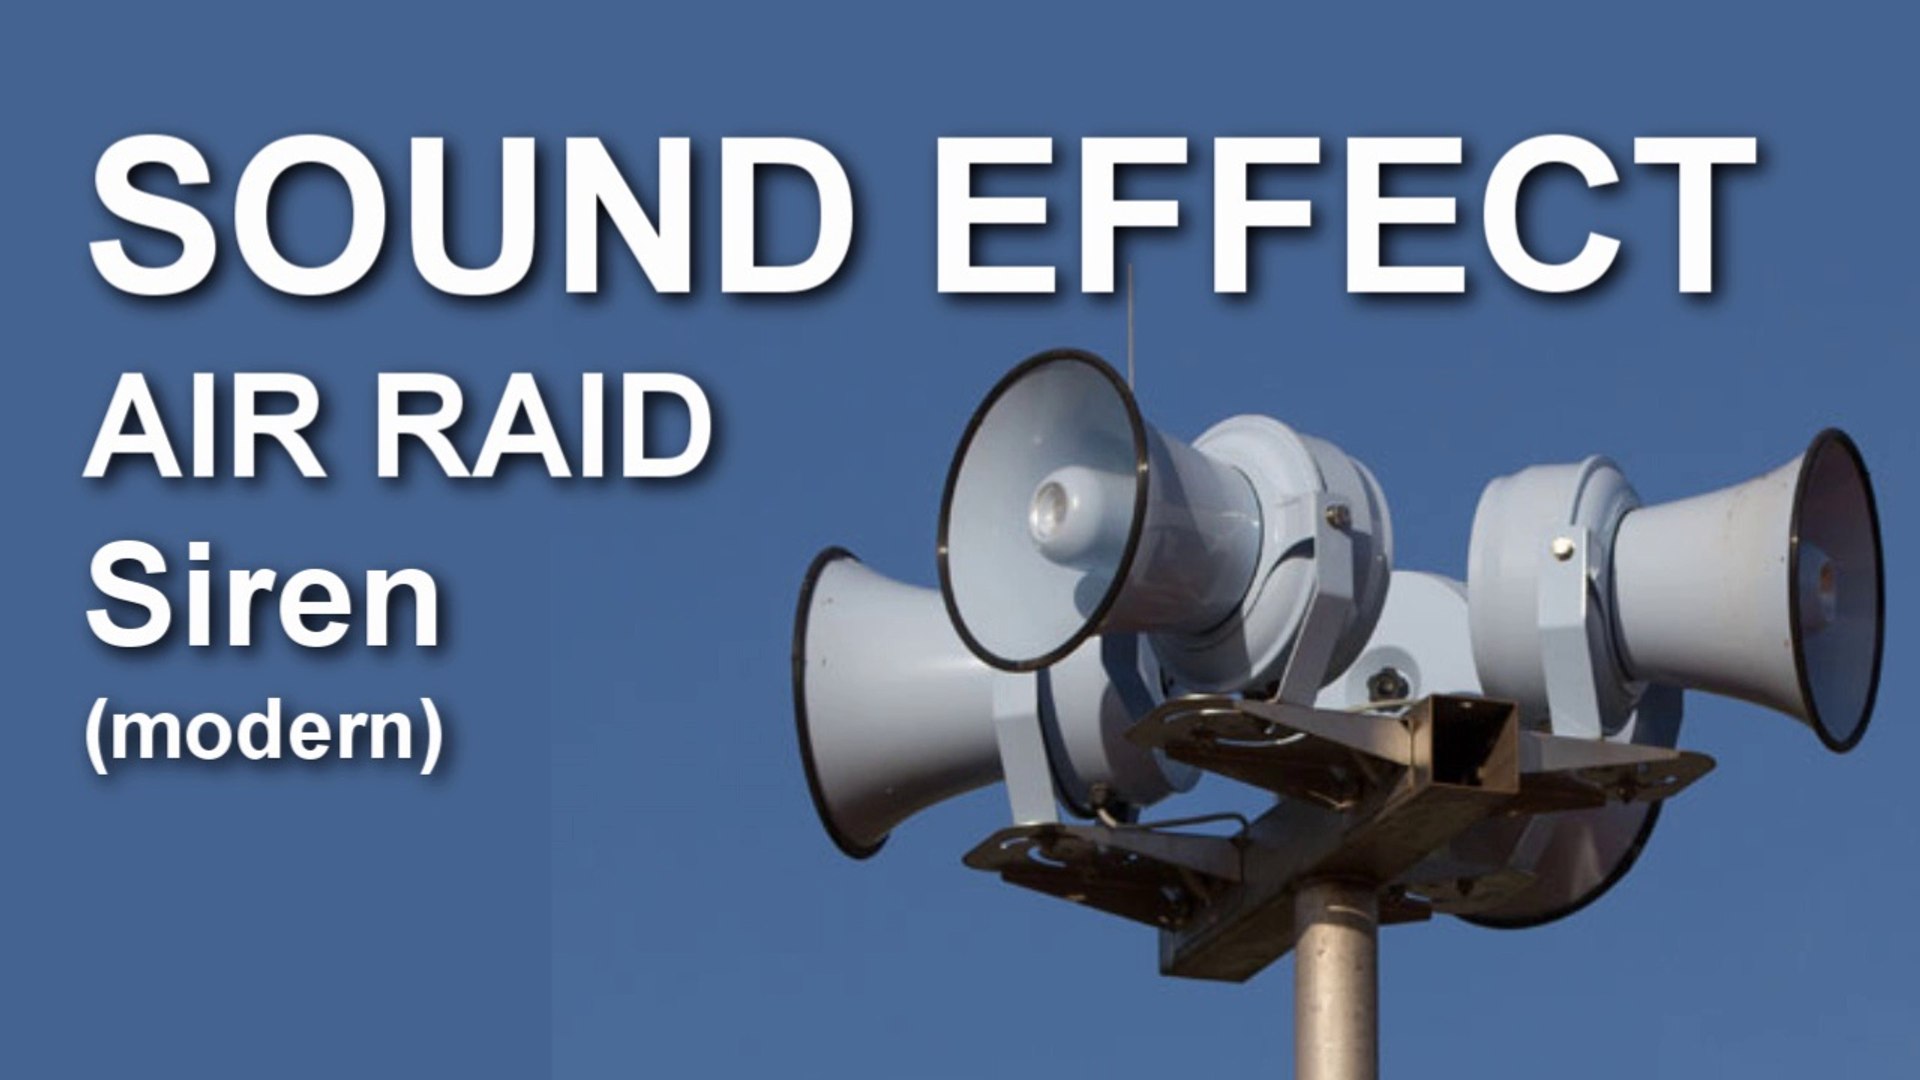 Air Raid Siren Modern Sound Effect - Video Dailymotion